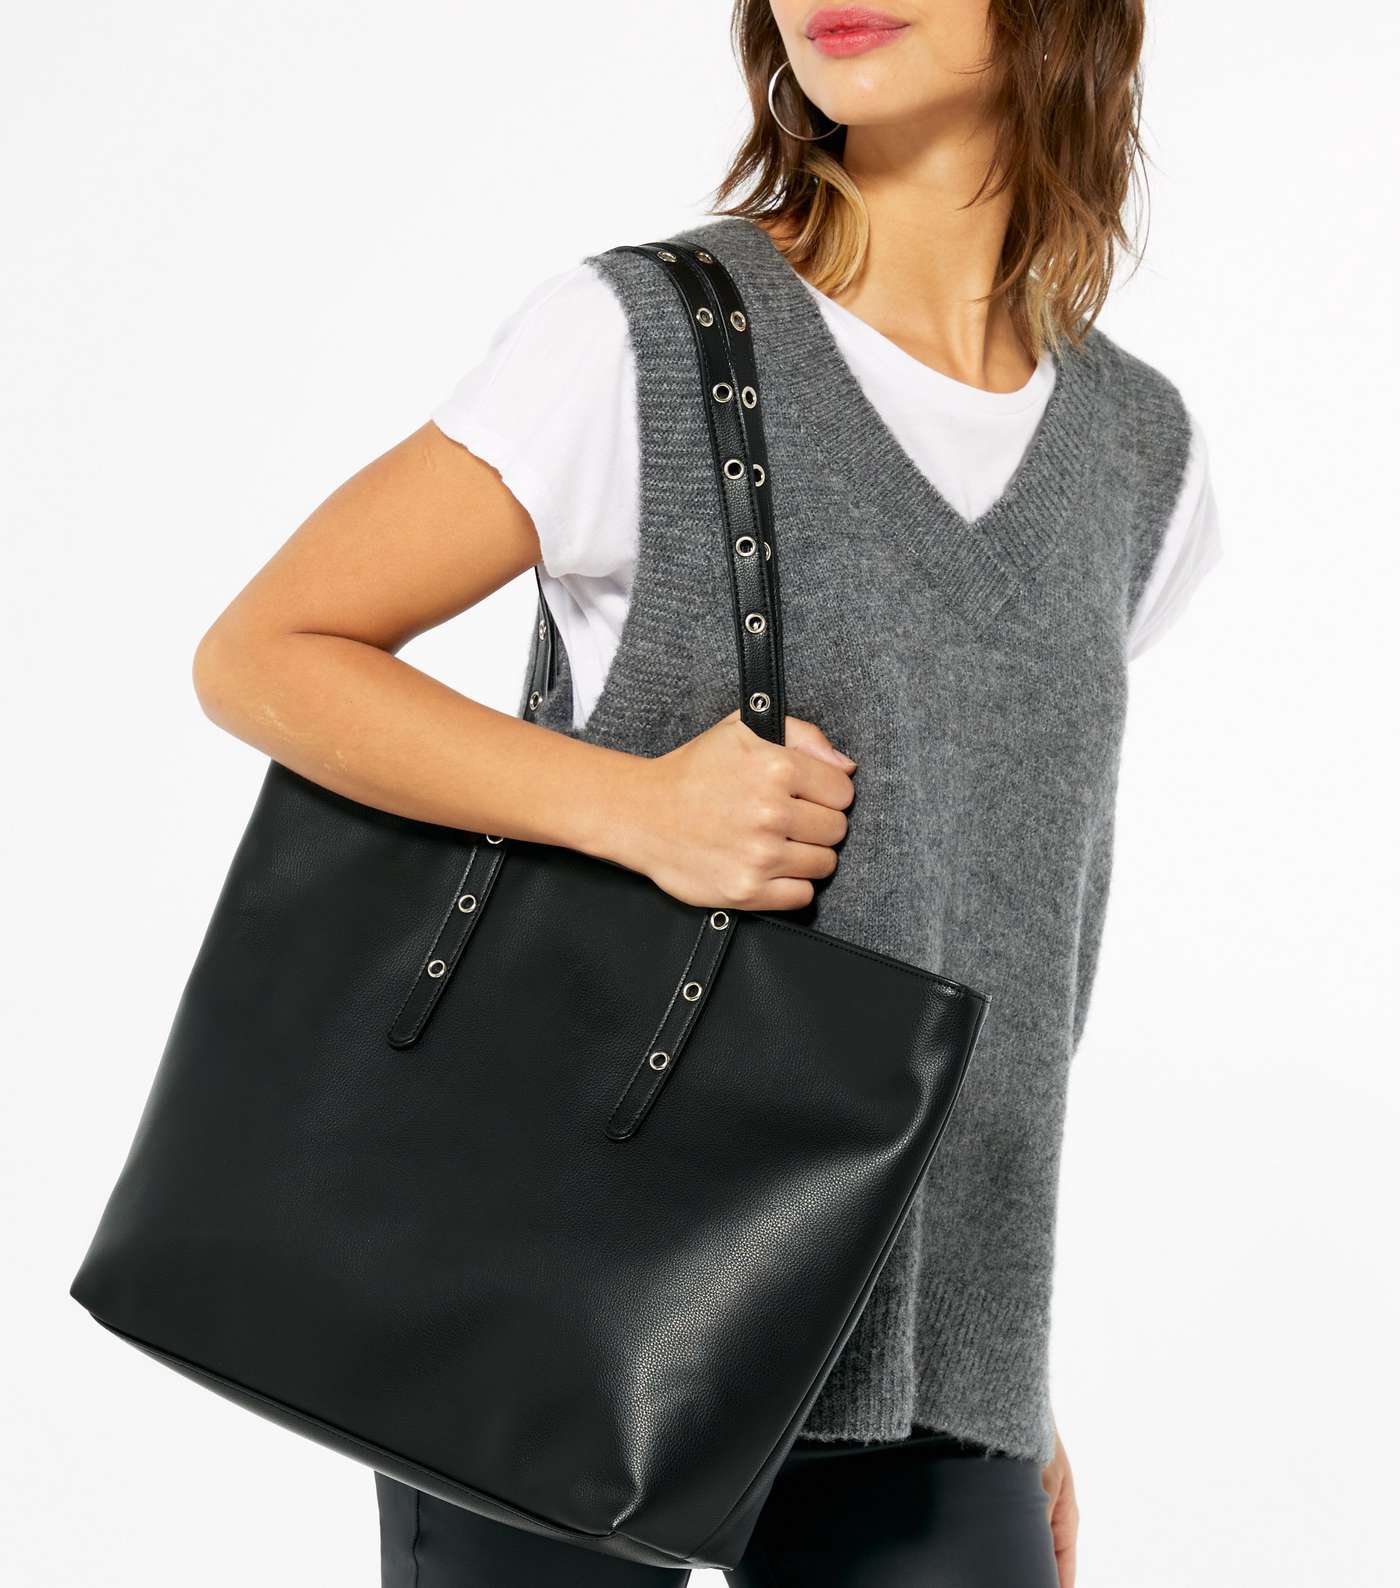 Black Leather-Look Stud Strap Shopper Bag Image 2